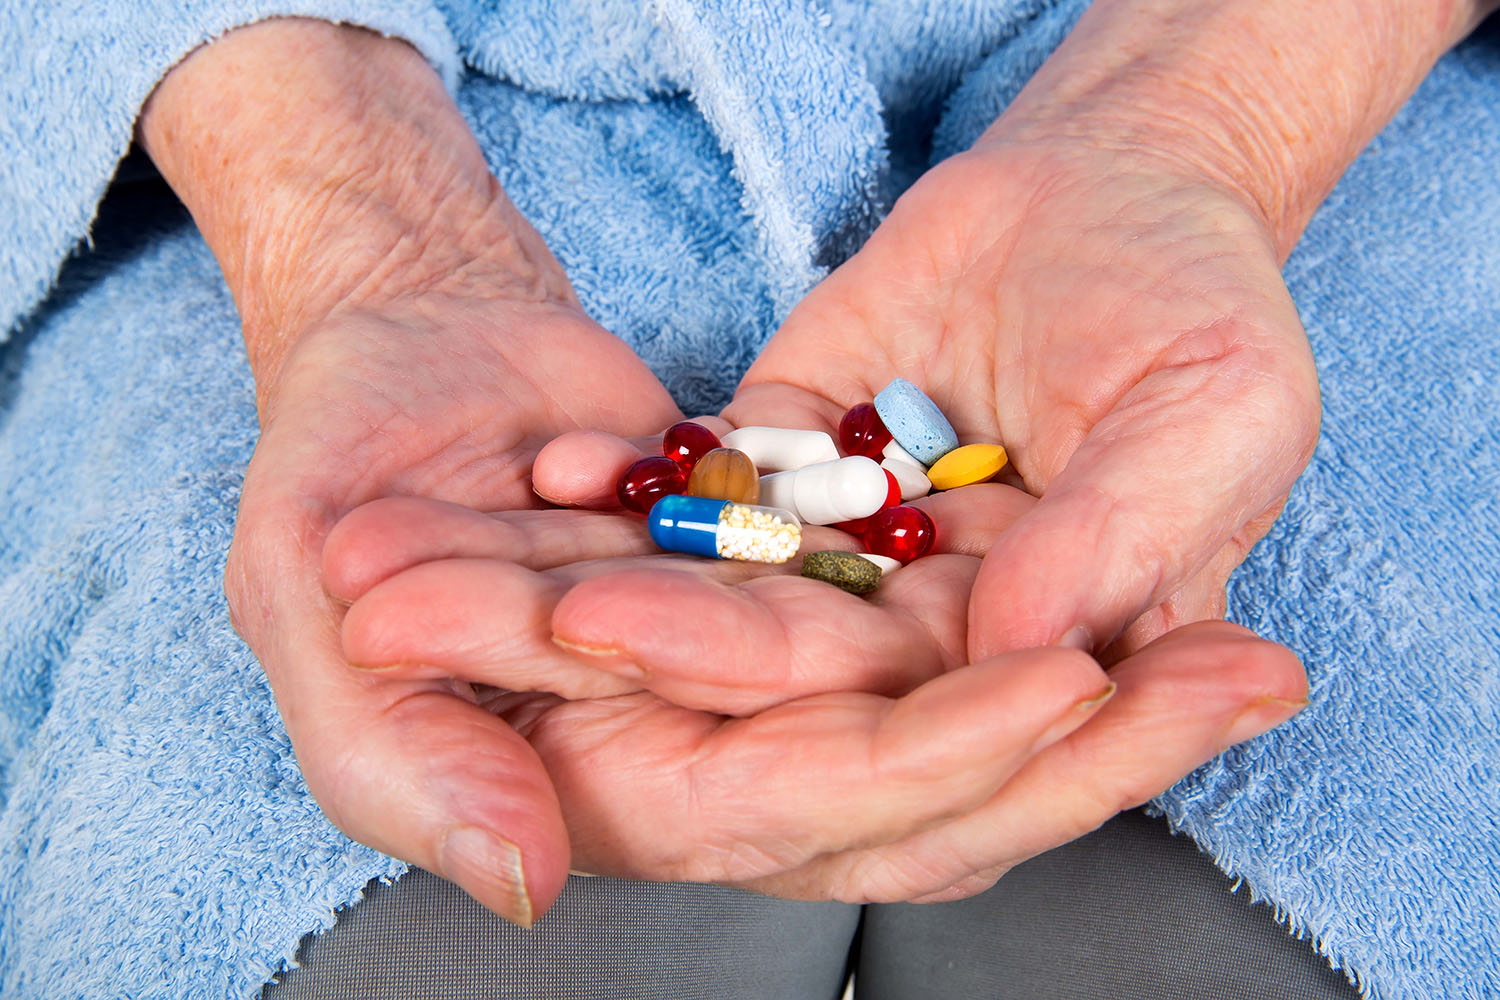 Viele Menschen nehmen ihre Medikamente nicht richtig ein – mitunter mit schwerwiegenden Folgen. Wie lässt sich die Adhärenz verbessern?